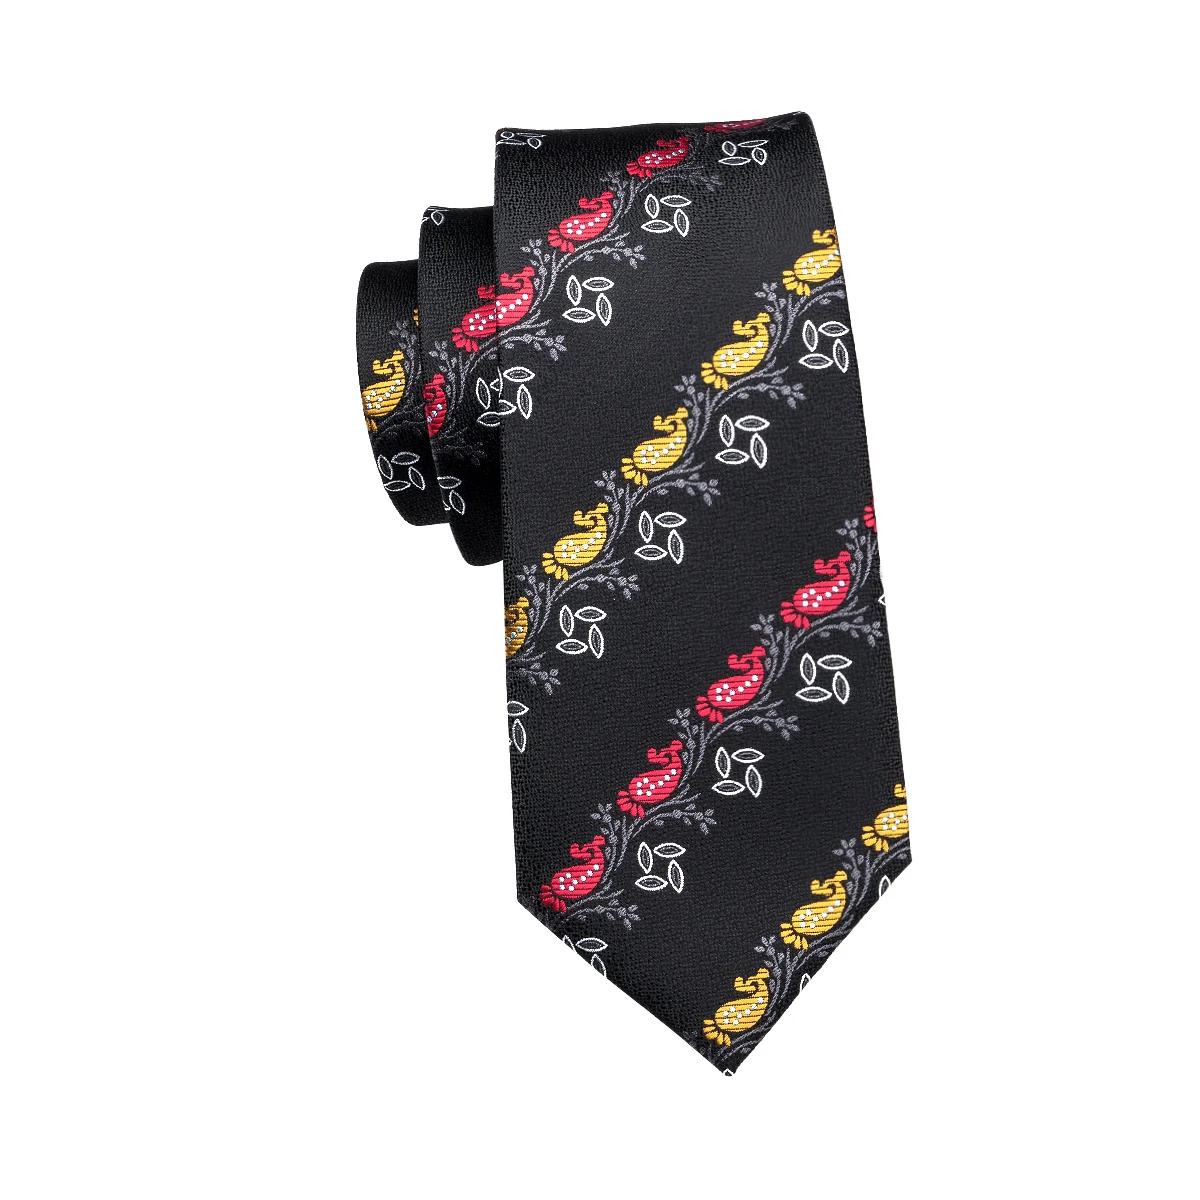 Hi-Tie цветочный черный галстук для мужчин шелковый ручной жакет тканевый Галстук Модные мужские платья аксессуары галстук цена GravataA-1690